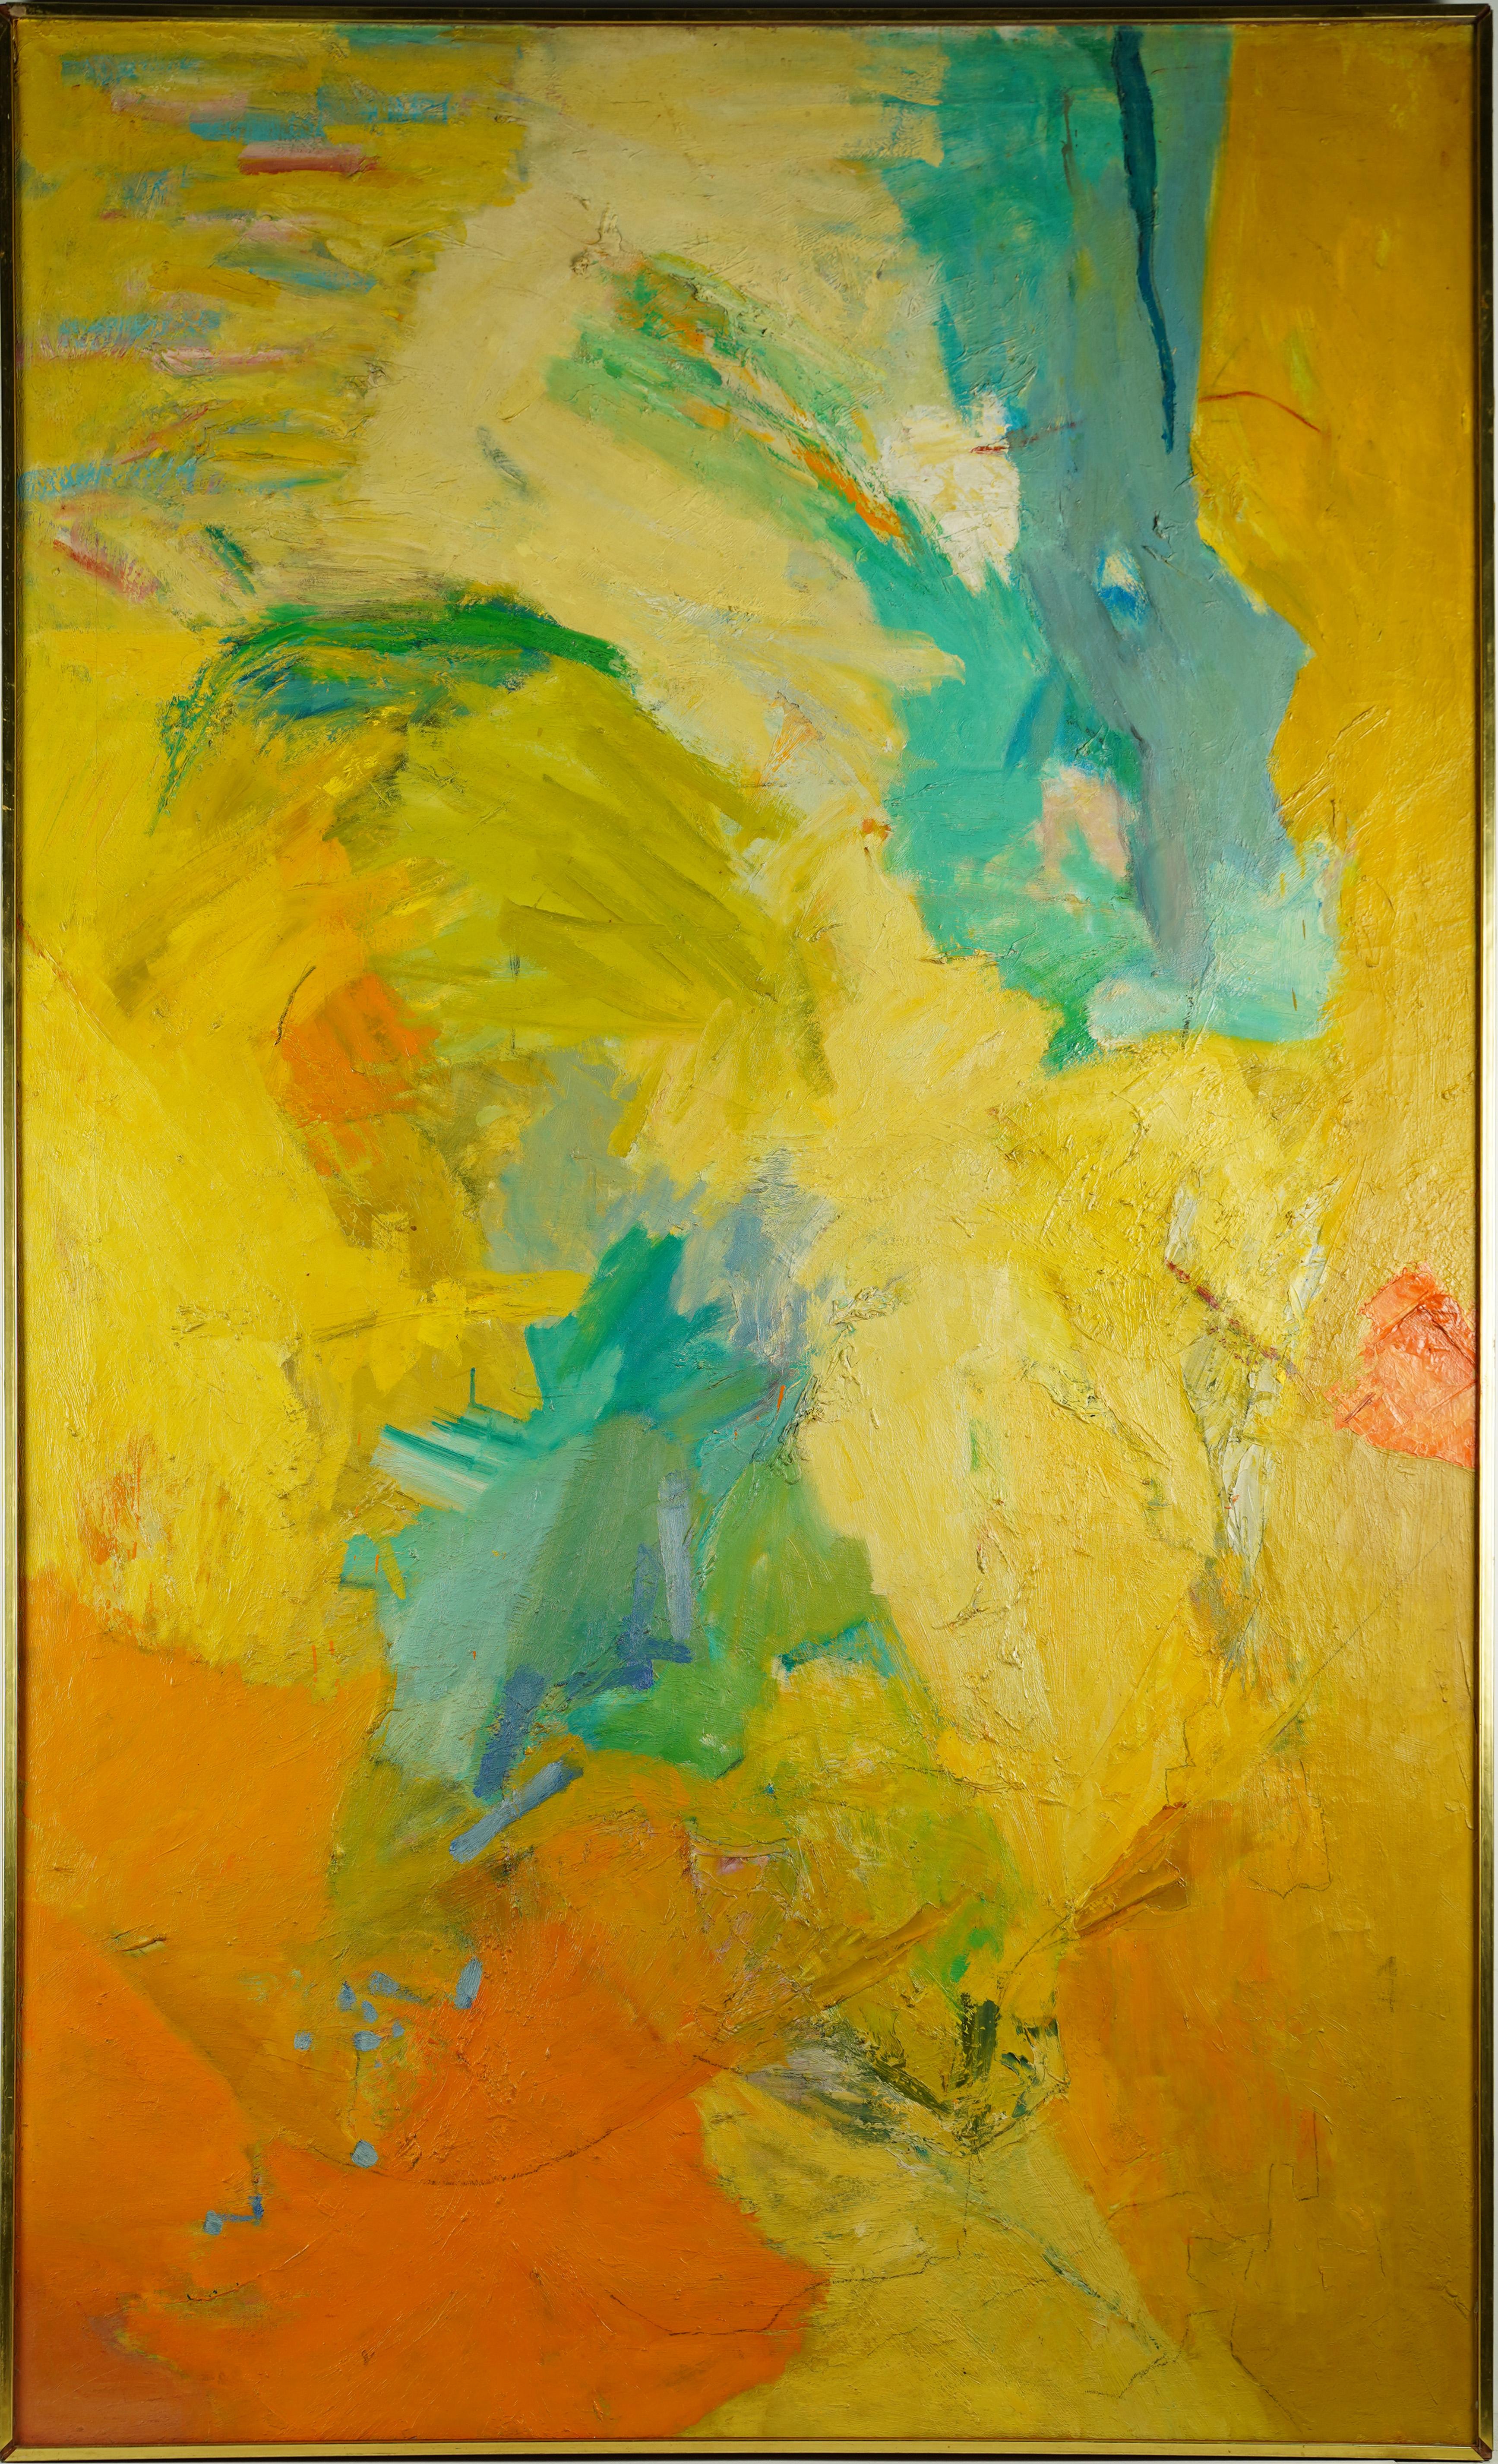 Ancienne peinture à l'huile expressionniste abstraite américaine signée, de taille musée, rare - Painting de Arnold Friedman